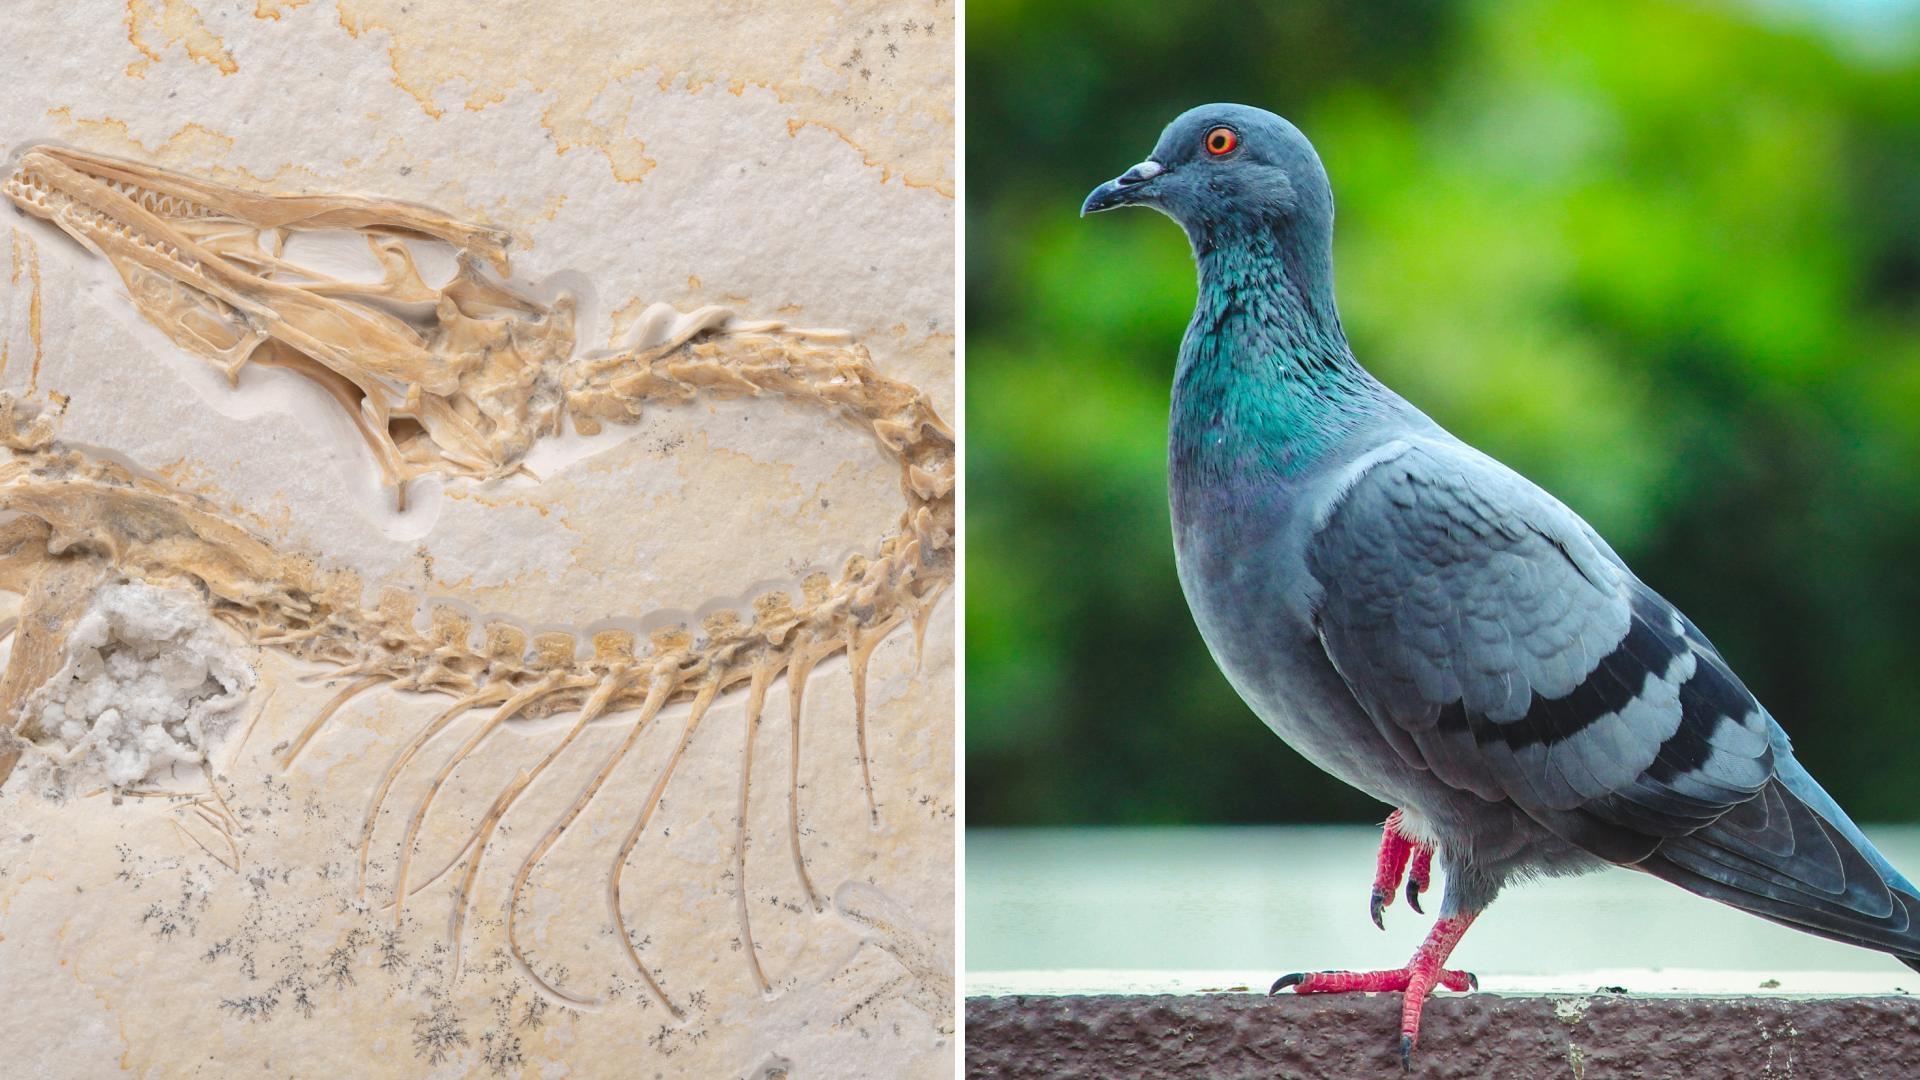 Científicos Confirman que Aves Son Dinosaurios Modernos tras Estudiar un Fósil